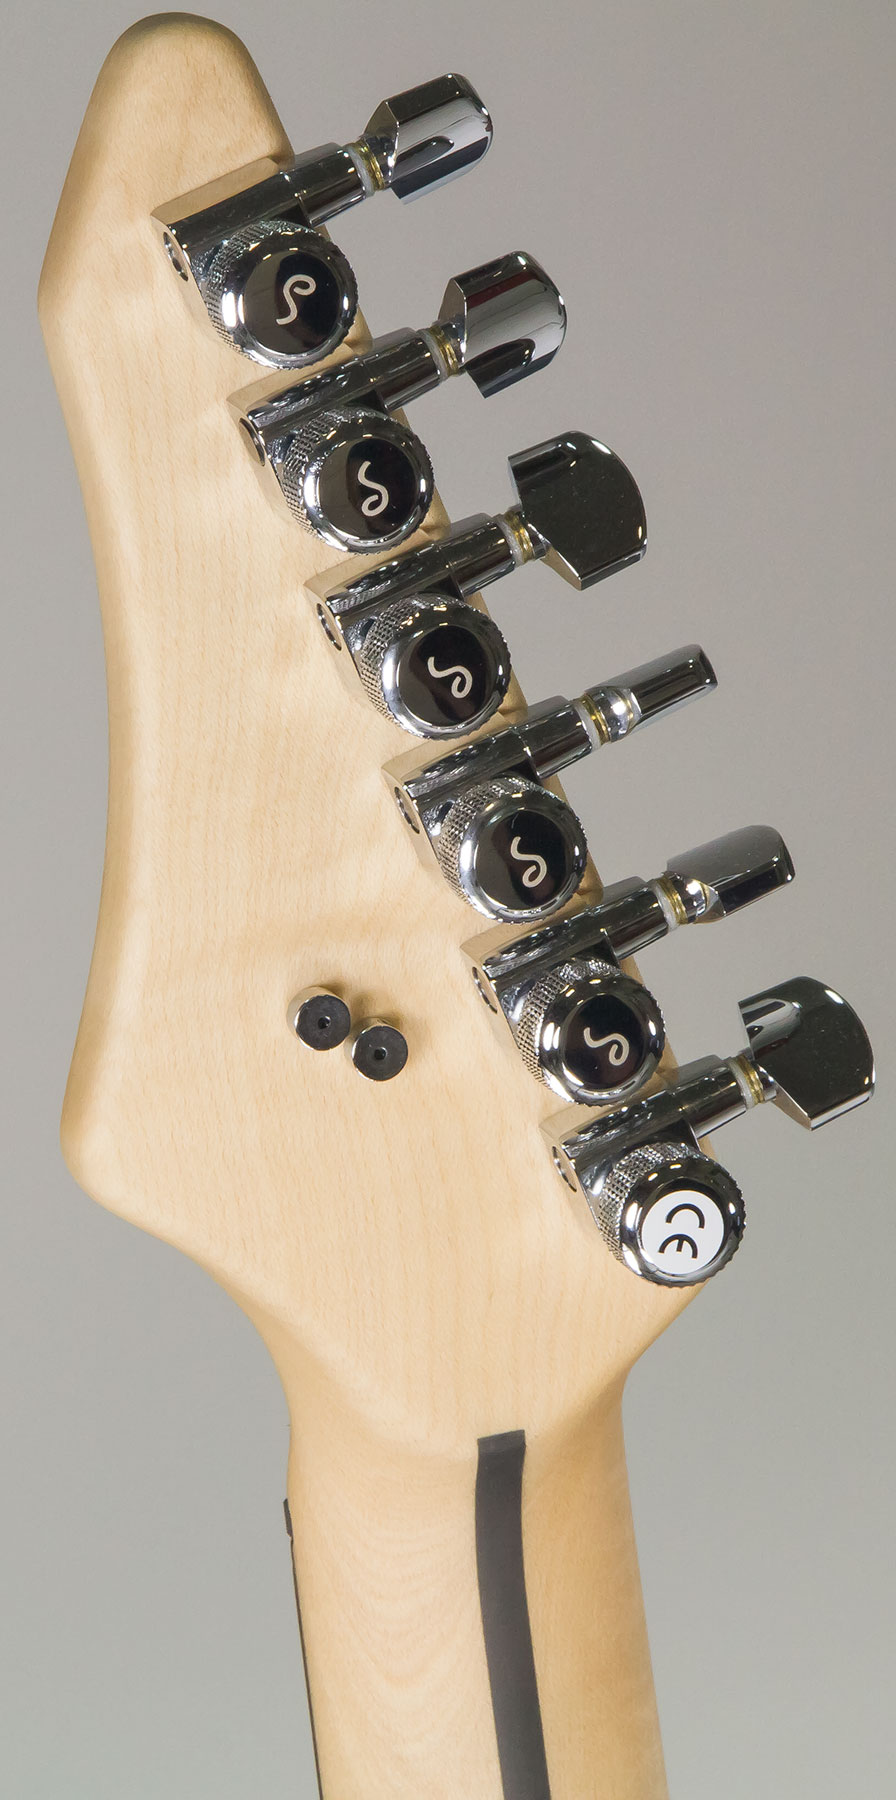 Vigier Excalibur Indus Hh Trem Rw - Textured Black - Double cut electric guitar - Variation 5